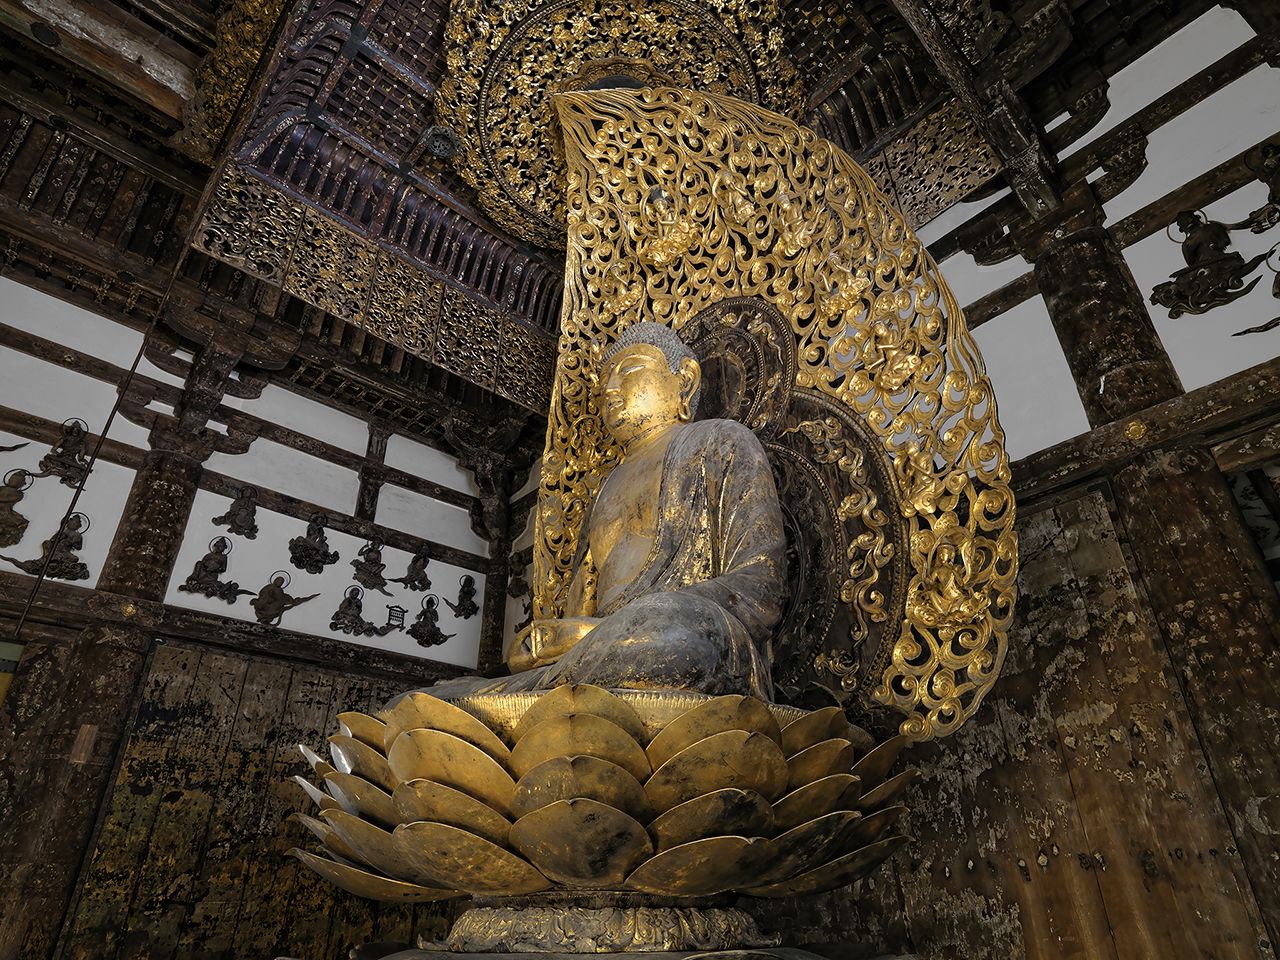 Буддийские скульптуры, балдахины и картины на стенах занесены в список национального достояния (национальные сокровища) (фотография предоставлена Бёдоин)